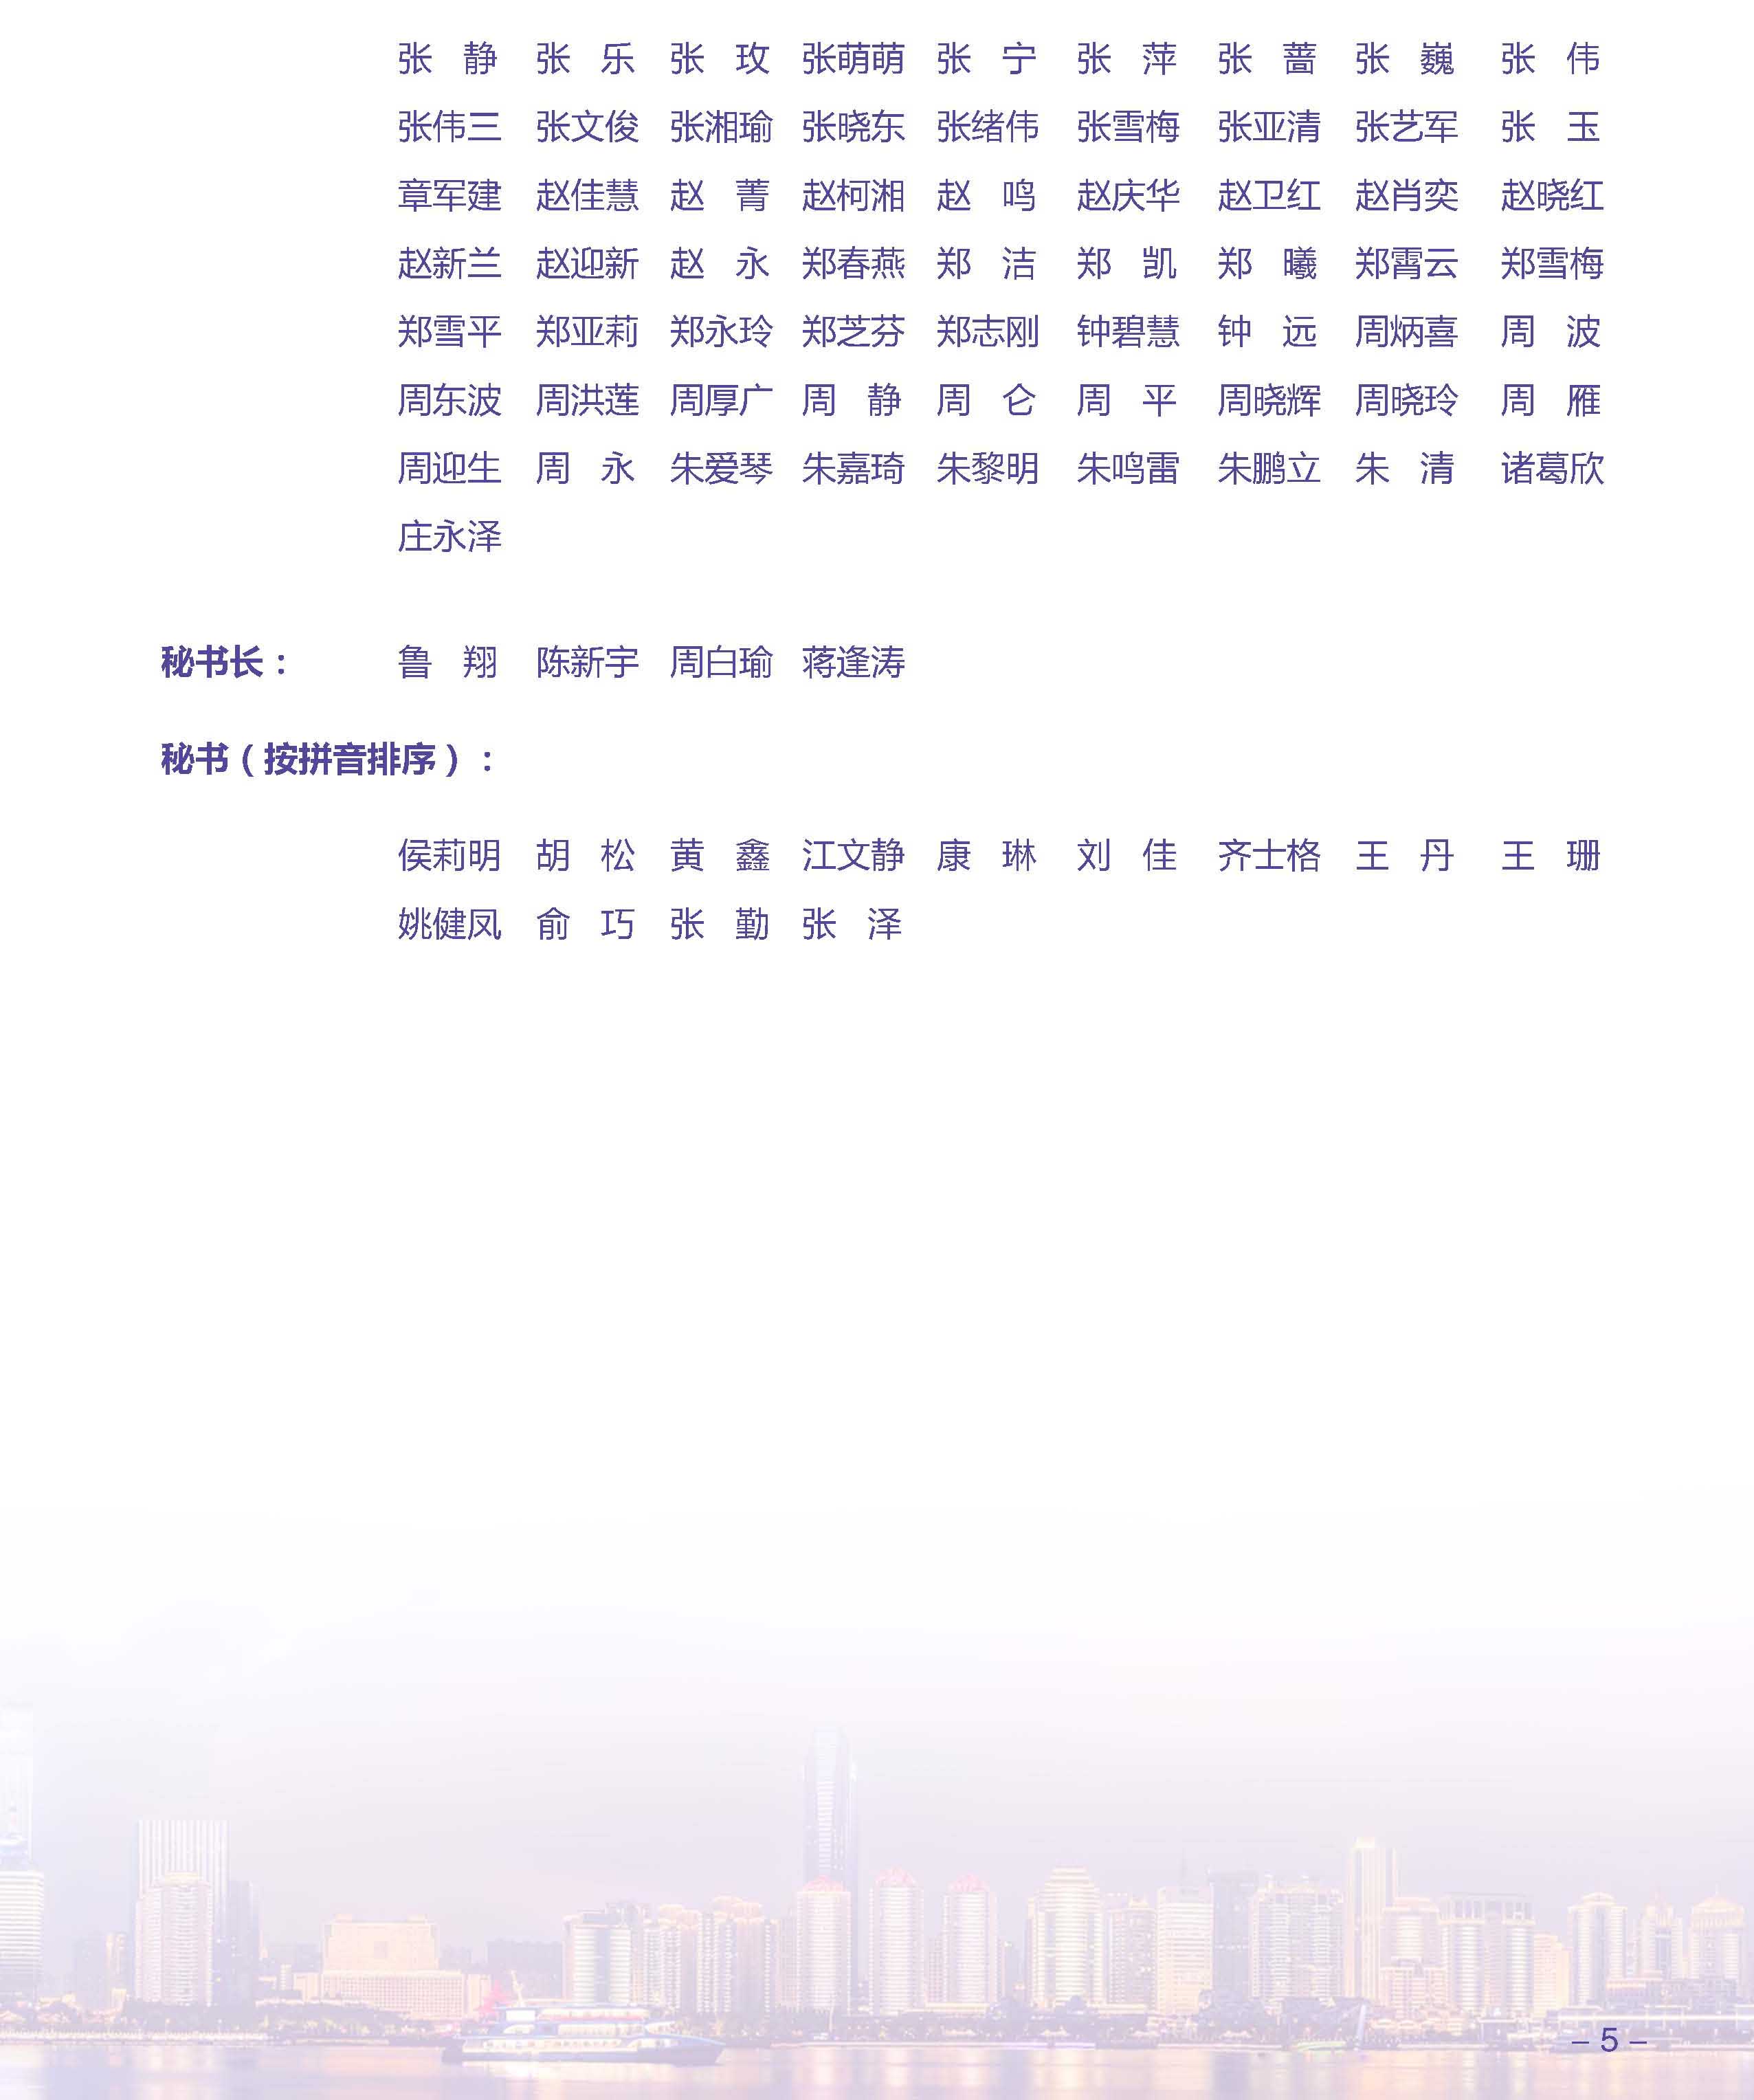 青岛大会会议手册-1019定稿(1)_页面_05.jpg